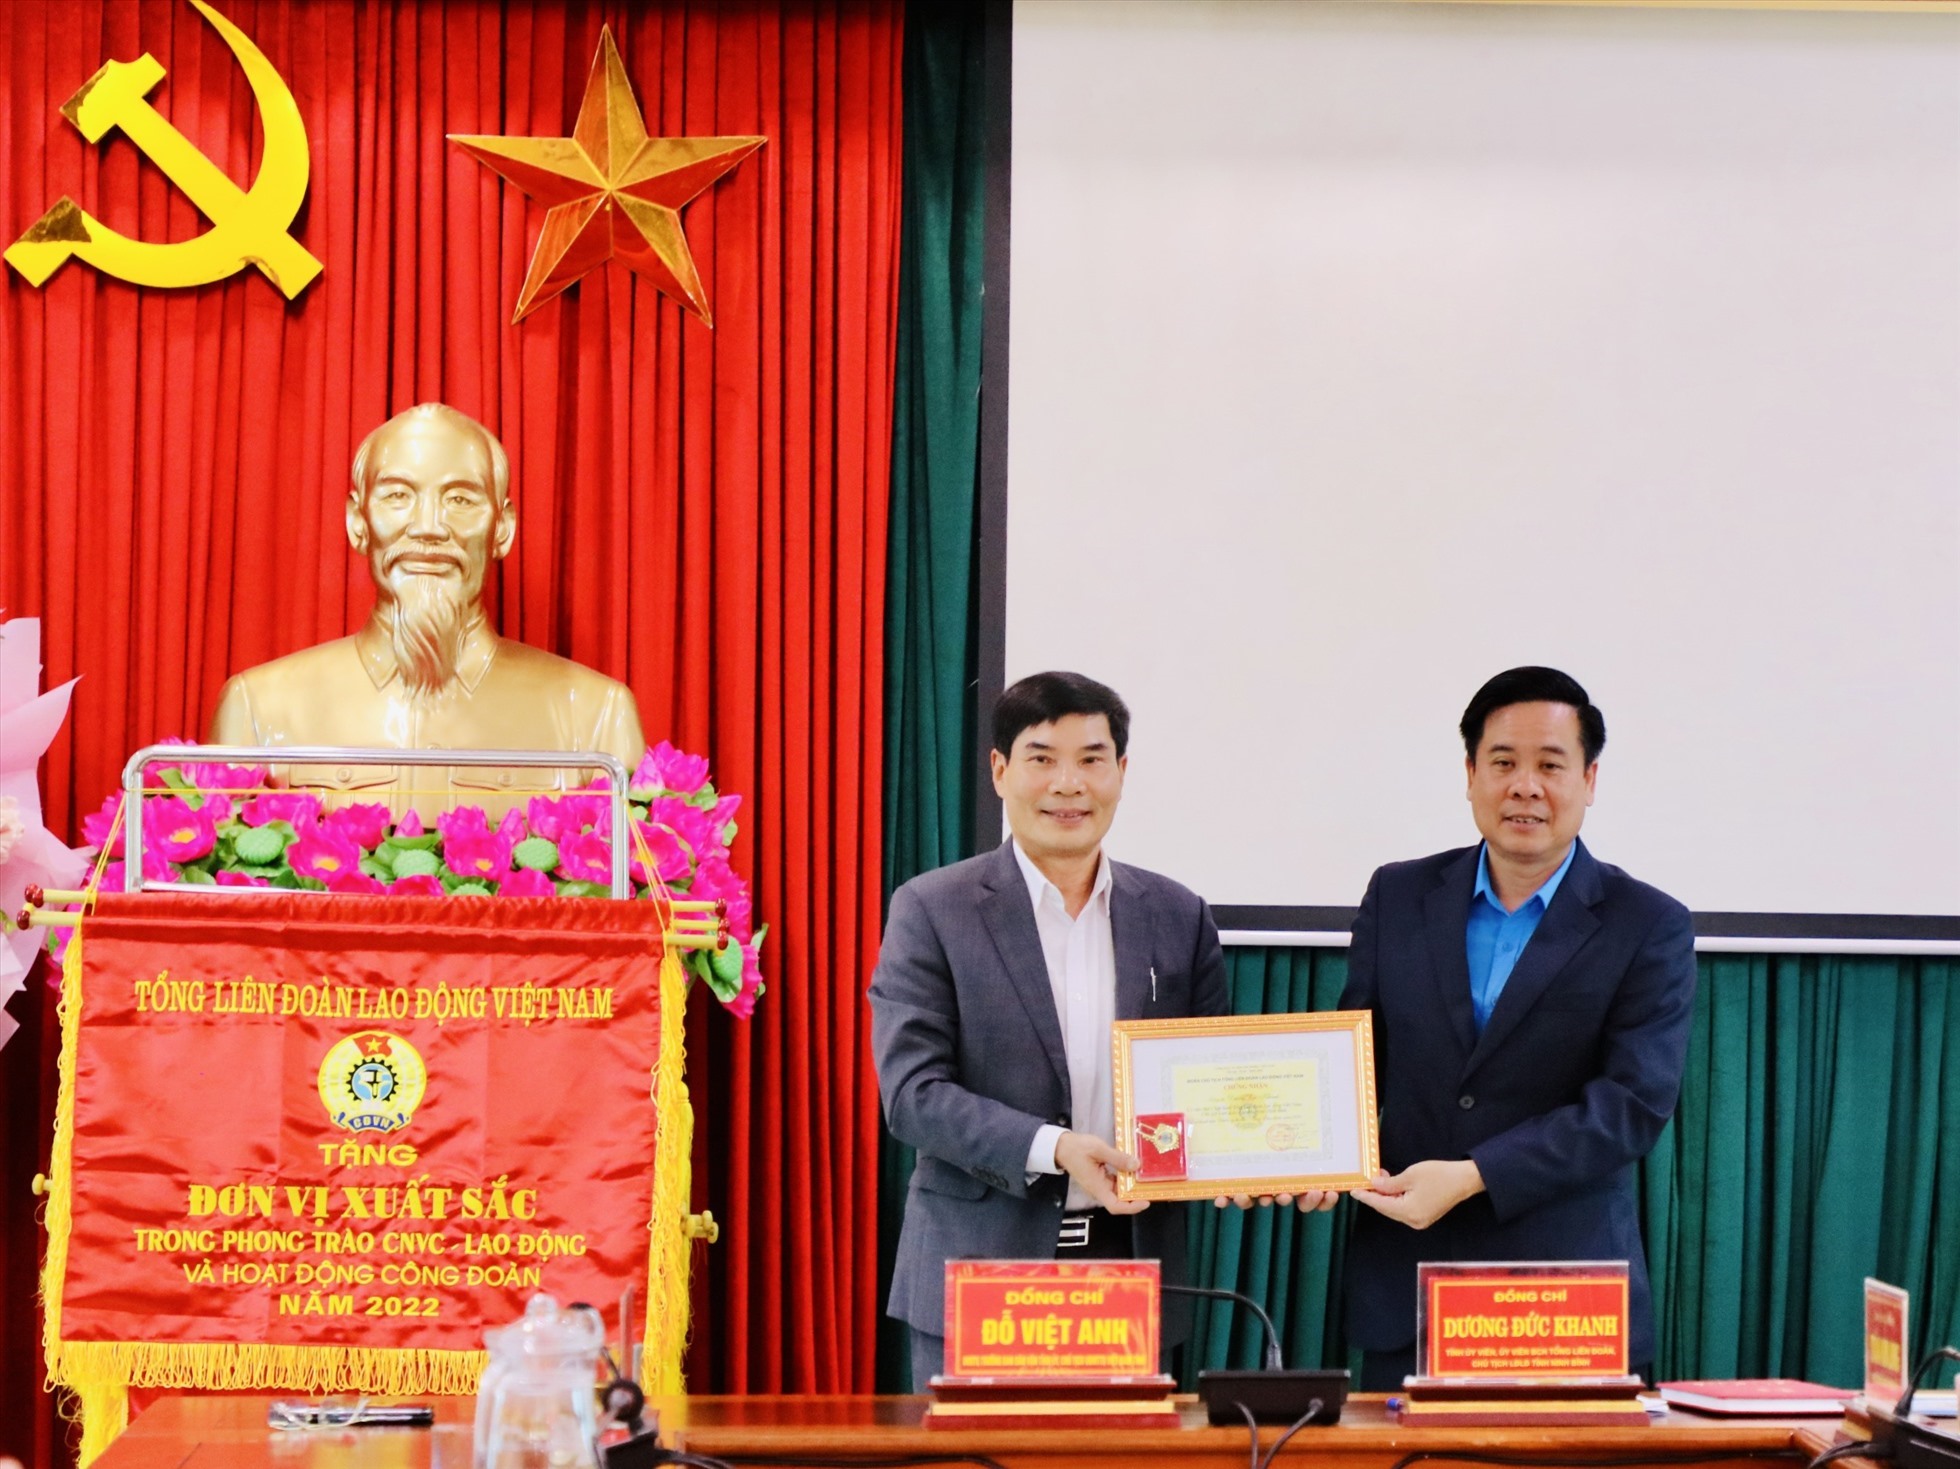 Trao danh hiệu Chiến sĩ thi đua của Tổng Liên đoàn lao động Việt Nam cho ông Dương Đức Khanh, Chủ tịch Liên đoàn lao động tỉnh Ninh Bình. Ảnh: Diệu Anh